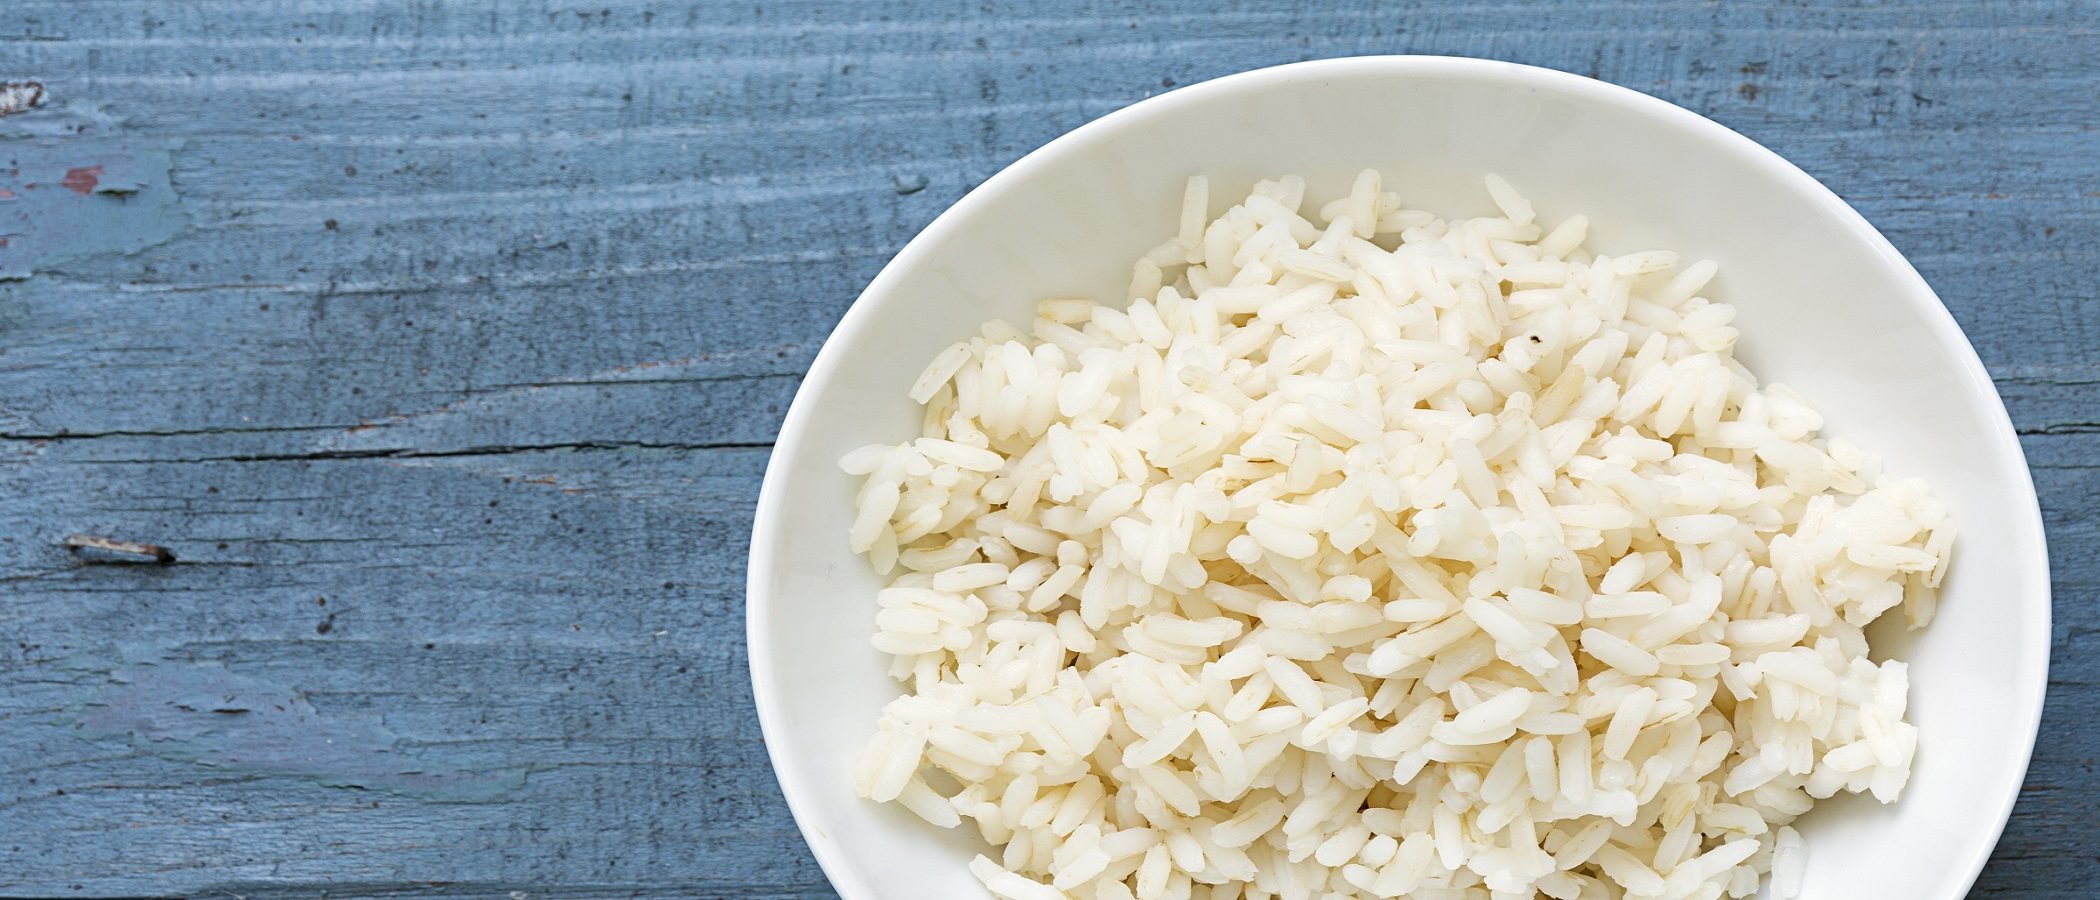 siesta Auto Persona El arroz blanco, ¿es bueno para los niños pequeños? - Bekia Padres